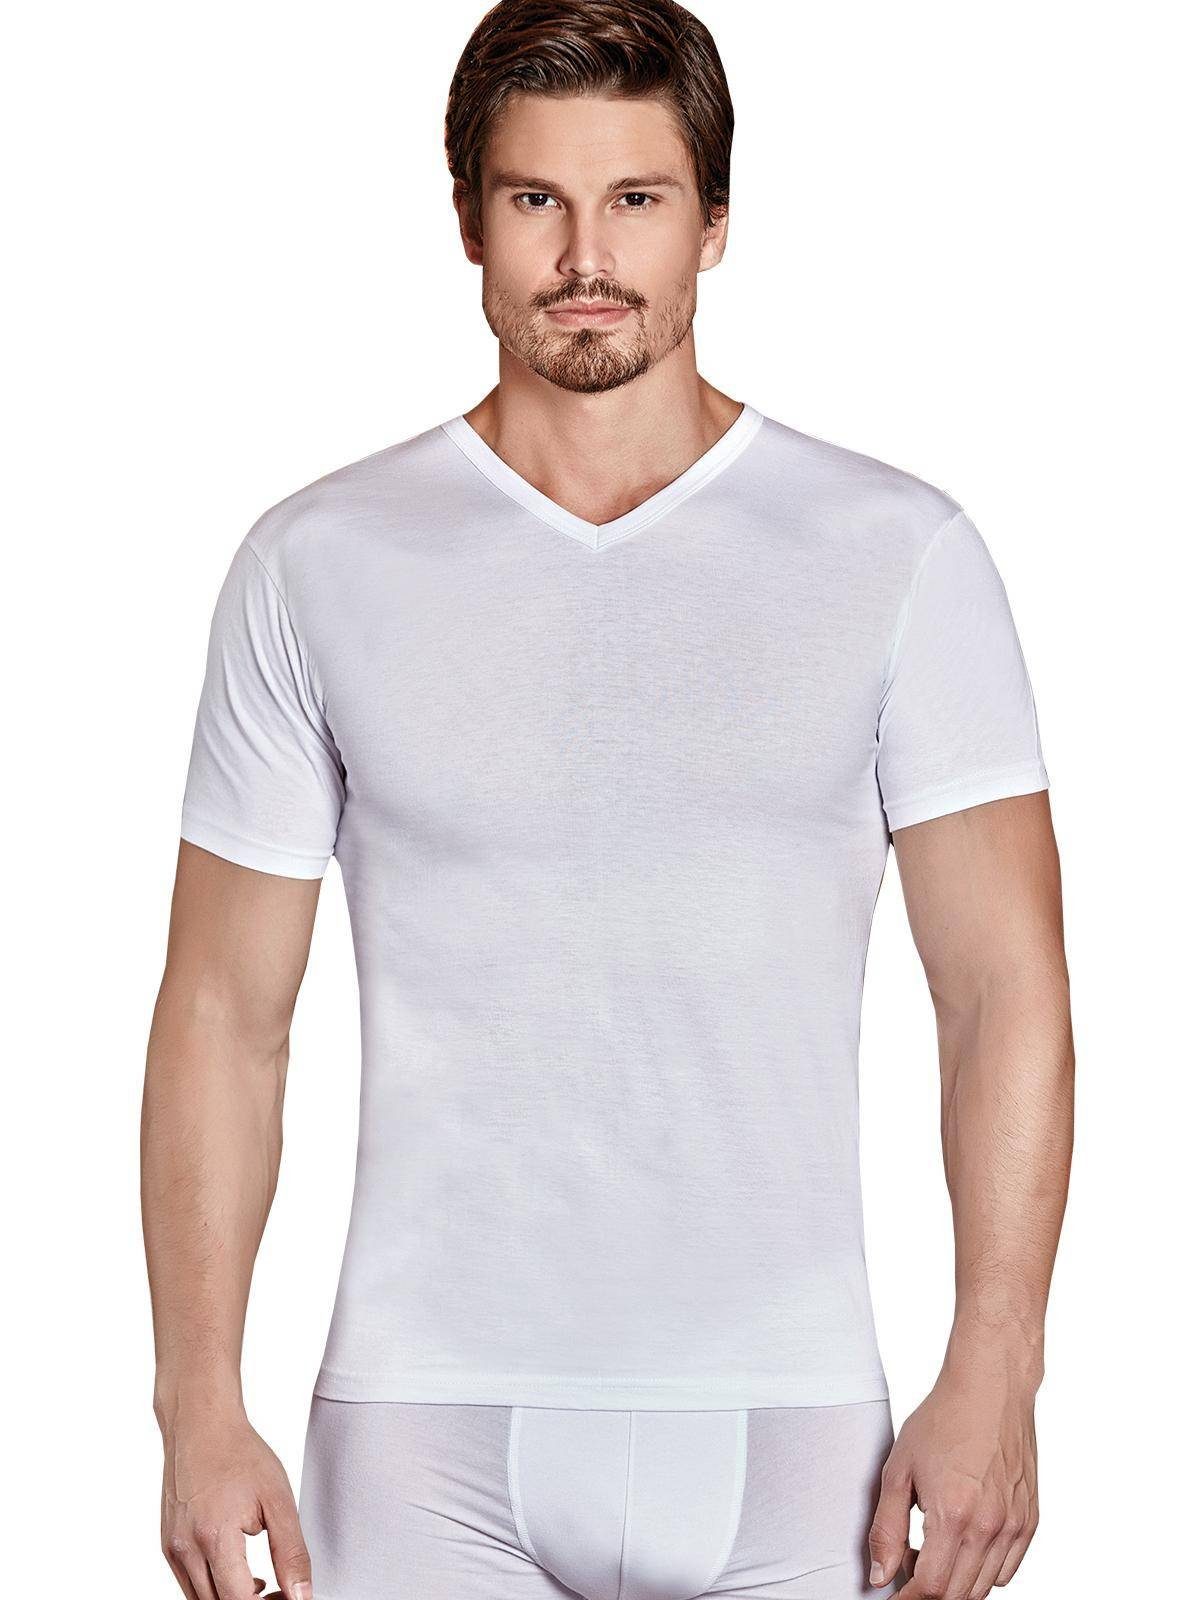 Berrak Collection Unterhemd Kurzarm V-Ausschnitt Herren Business Shirt Weiß, BS1007